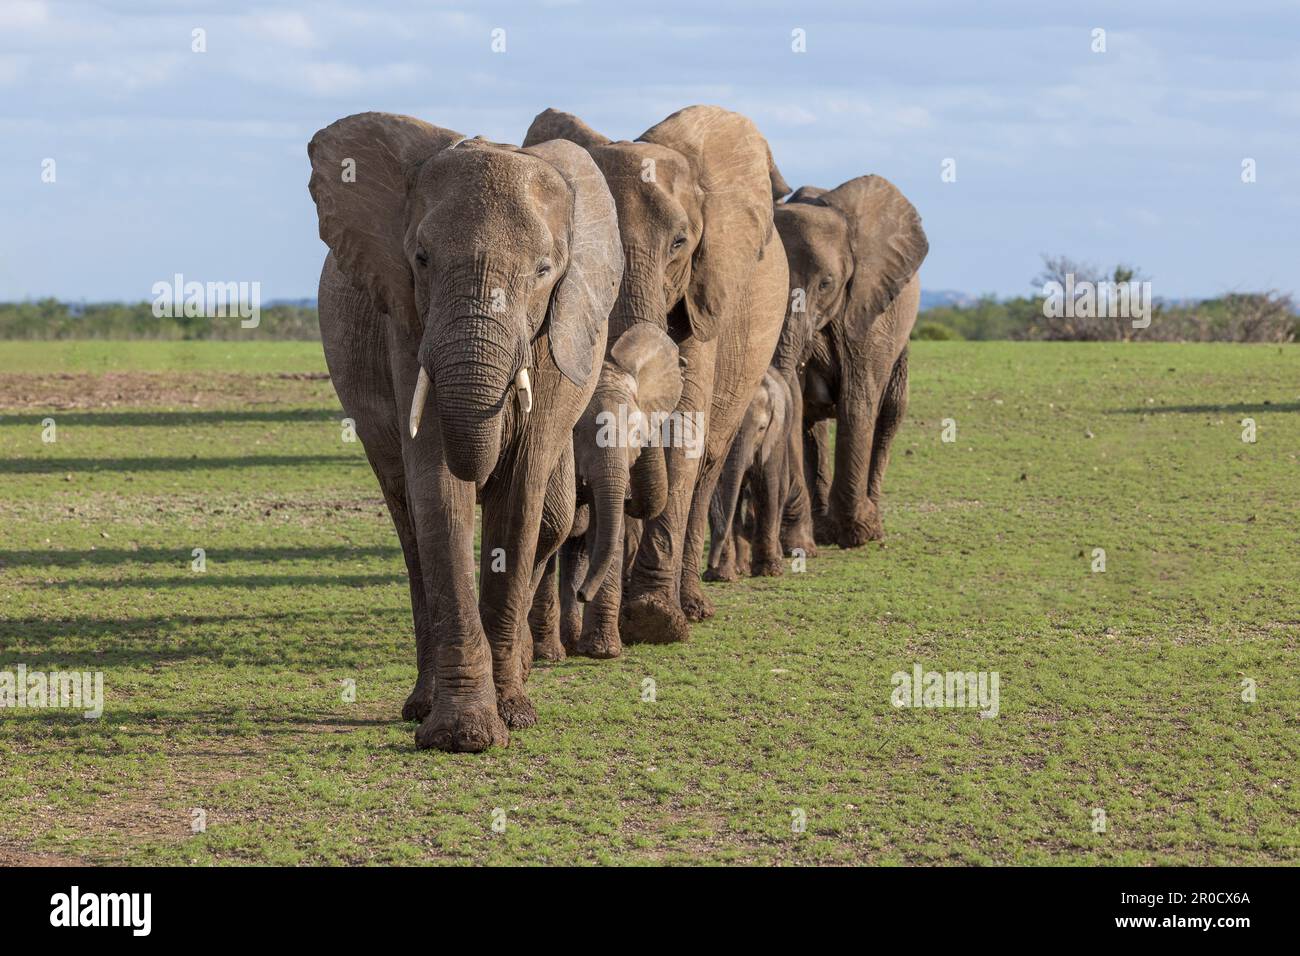 African elephants (Loxodonta africana), Mashatu game reserve, Botswana Stock Photo